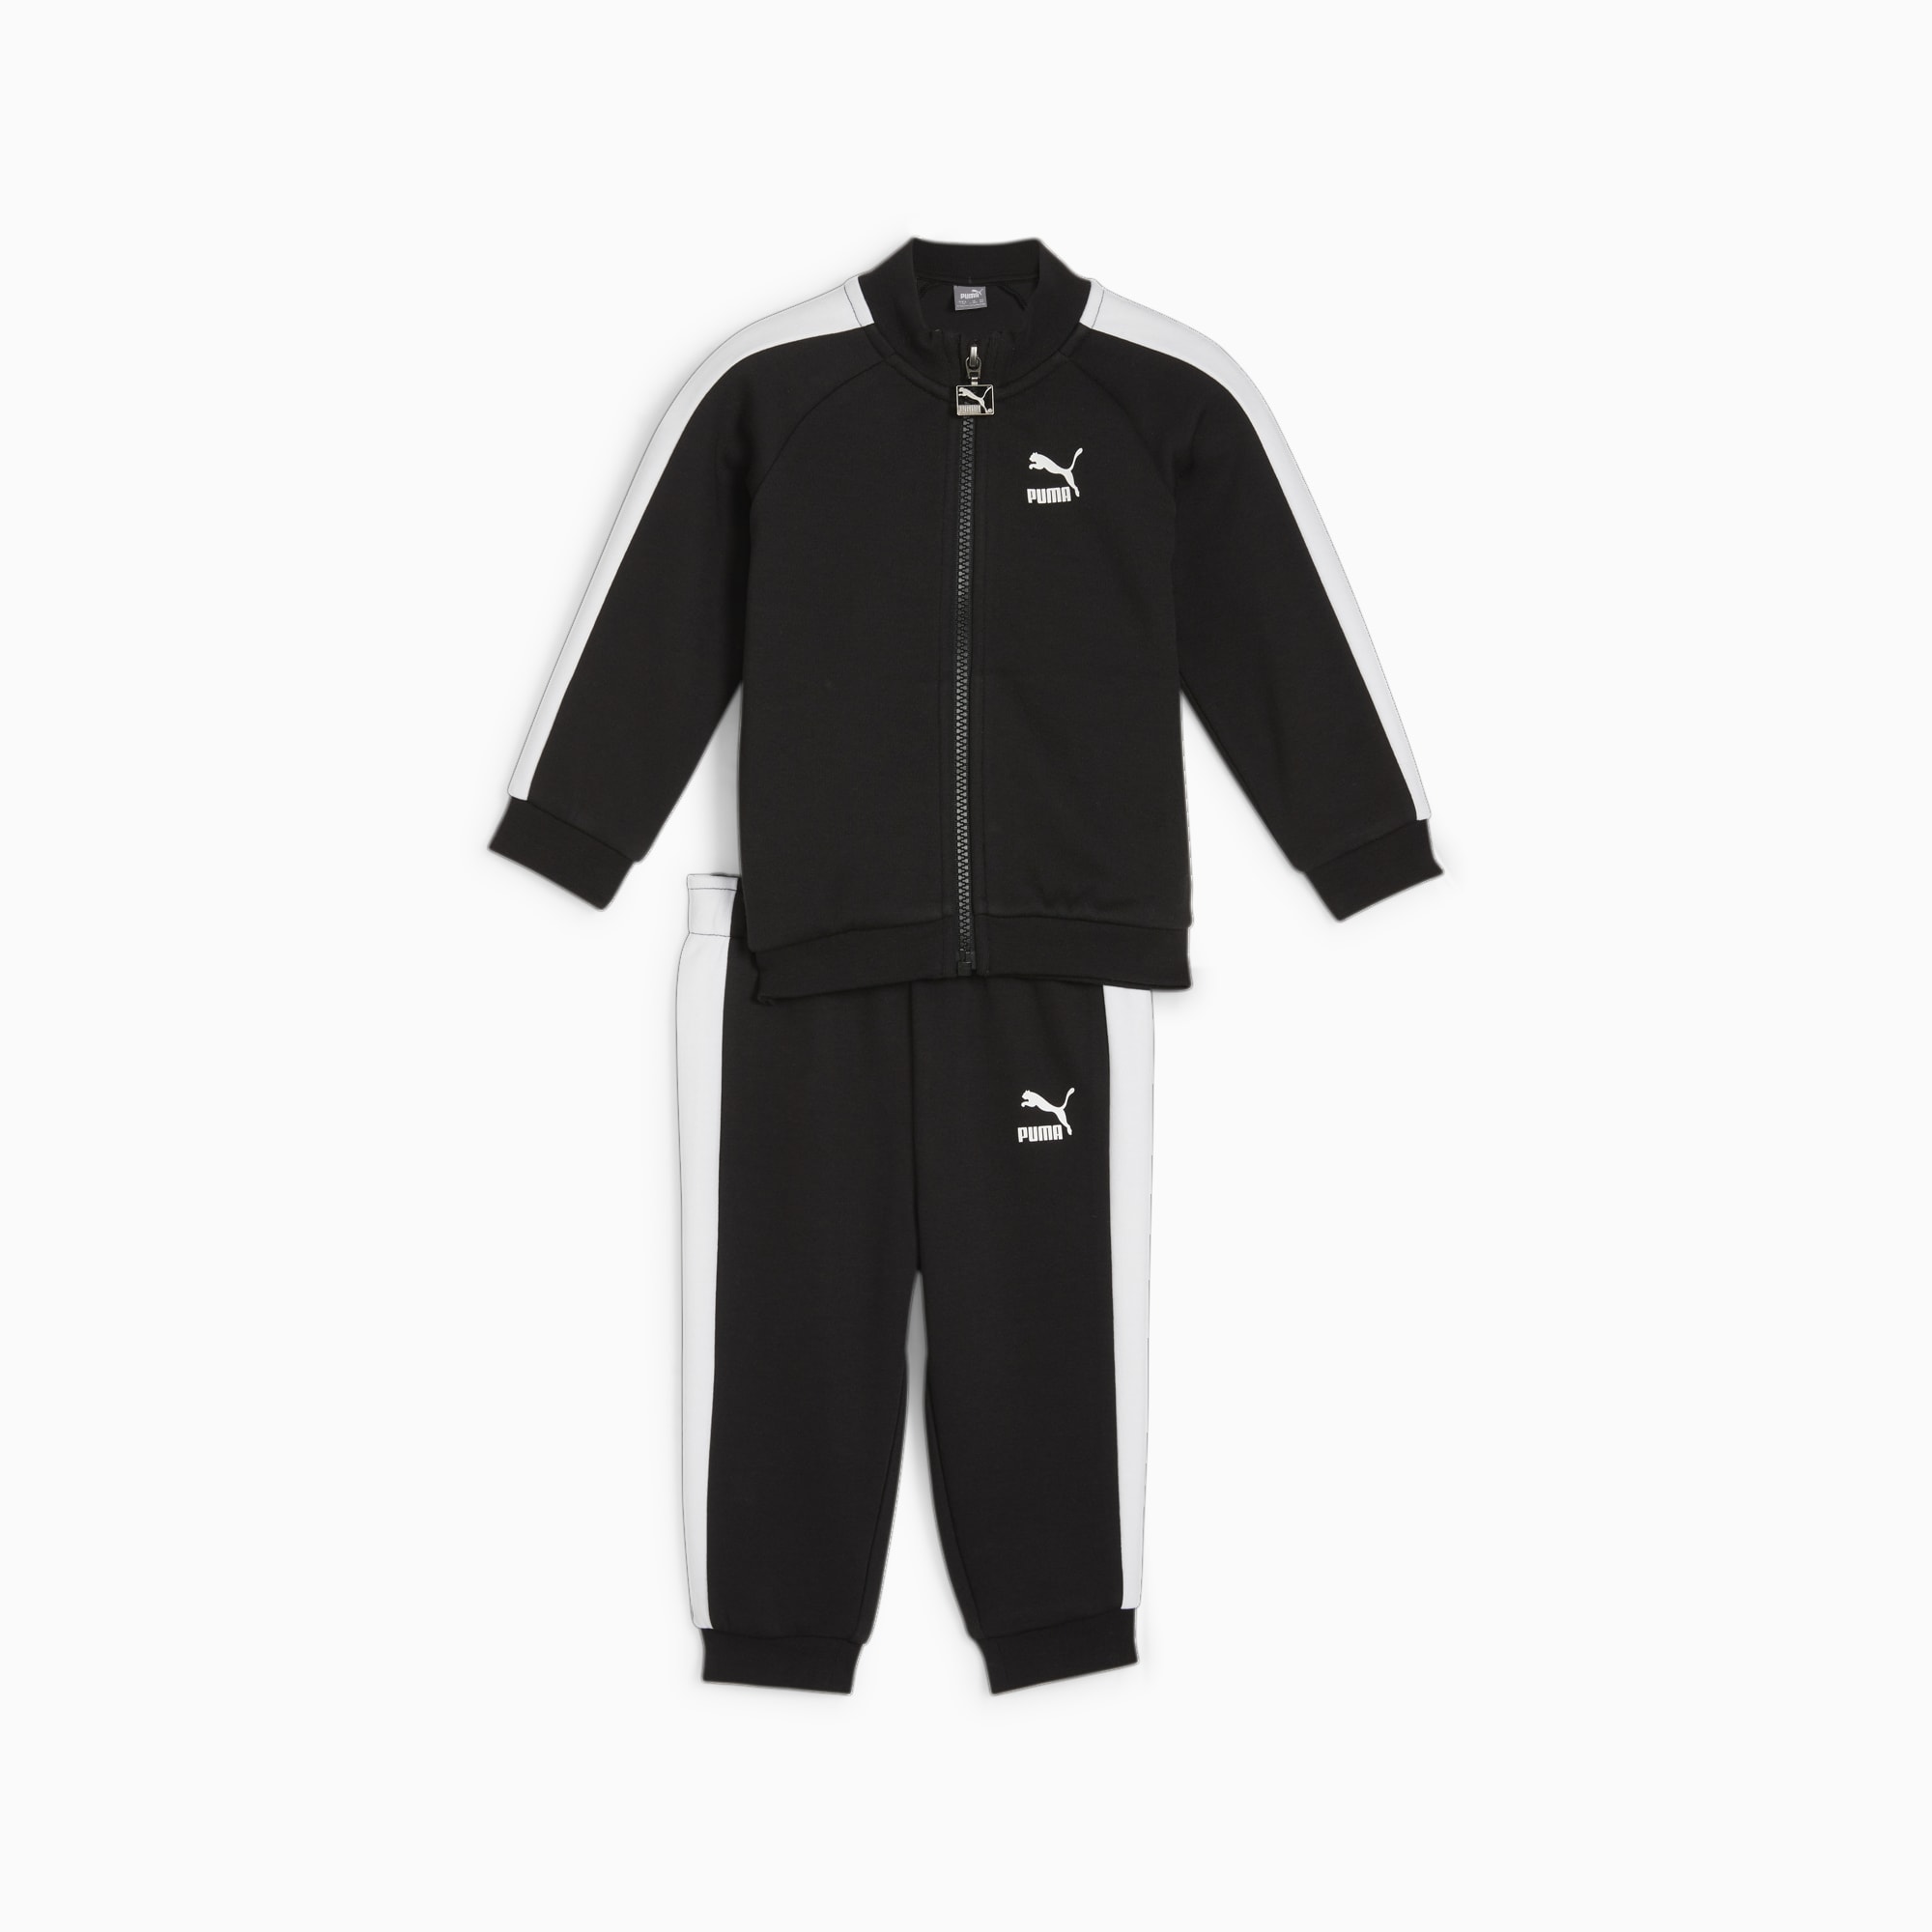 PUMA MINICATS T7 ICONIC Trainingsanzug Baby Für Kinder, Schwarz, Größe: 92, Kleidung